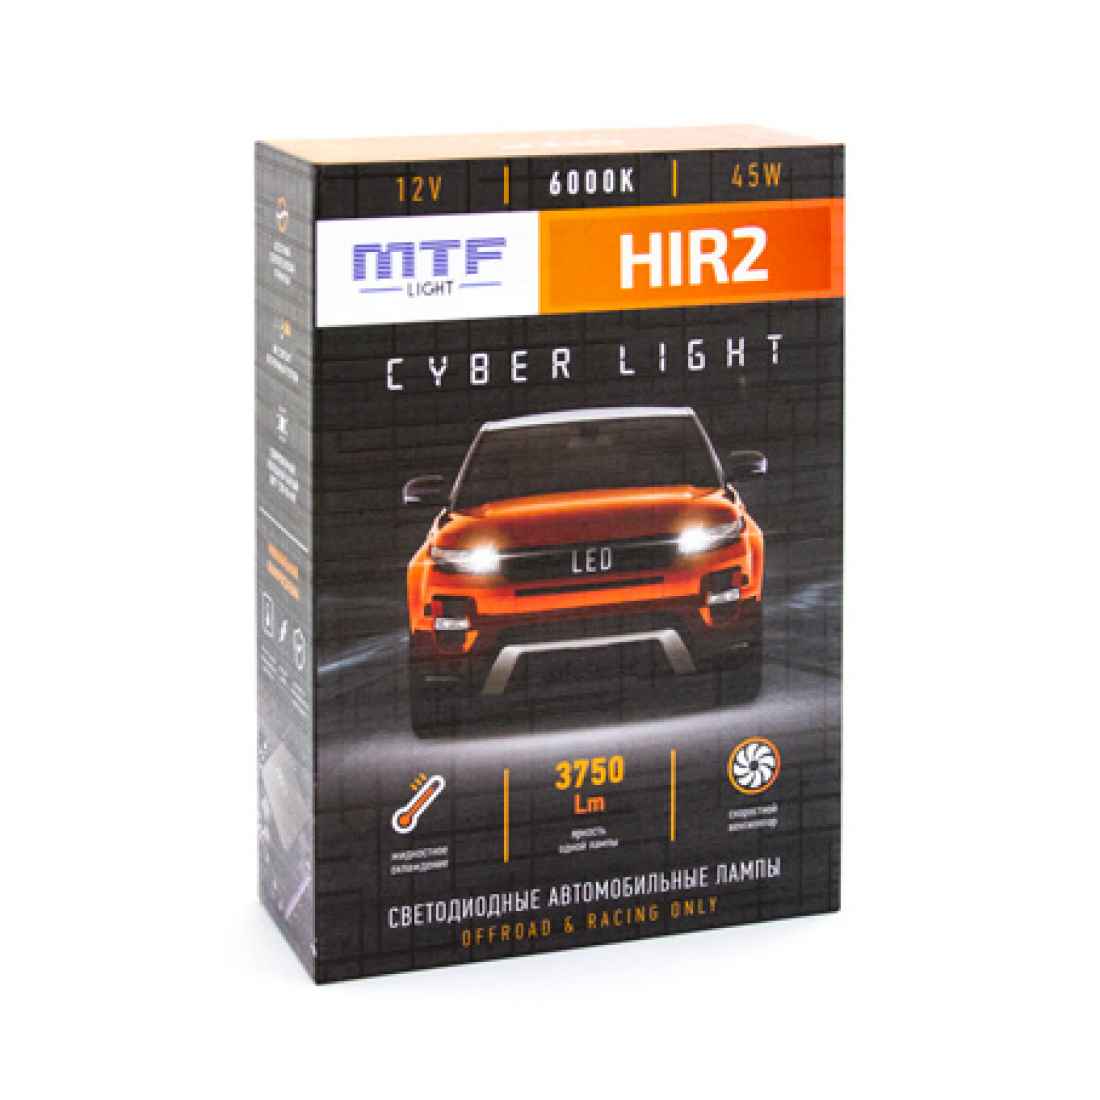 Светодиодные лампы mtf h11. Светодиодные лампы н1 Cyber Light. Светодиодные лампы h7 MTF-Light Cyber Light 6000к. Светодиодные лампы h7 MTF-Light Cyber Light 12v. Светодиодная лампа MTF Cyber Light h1, 6000к,.